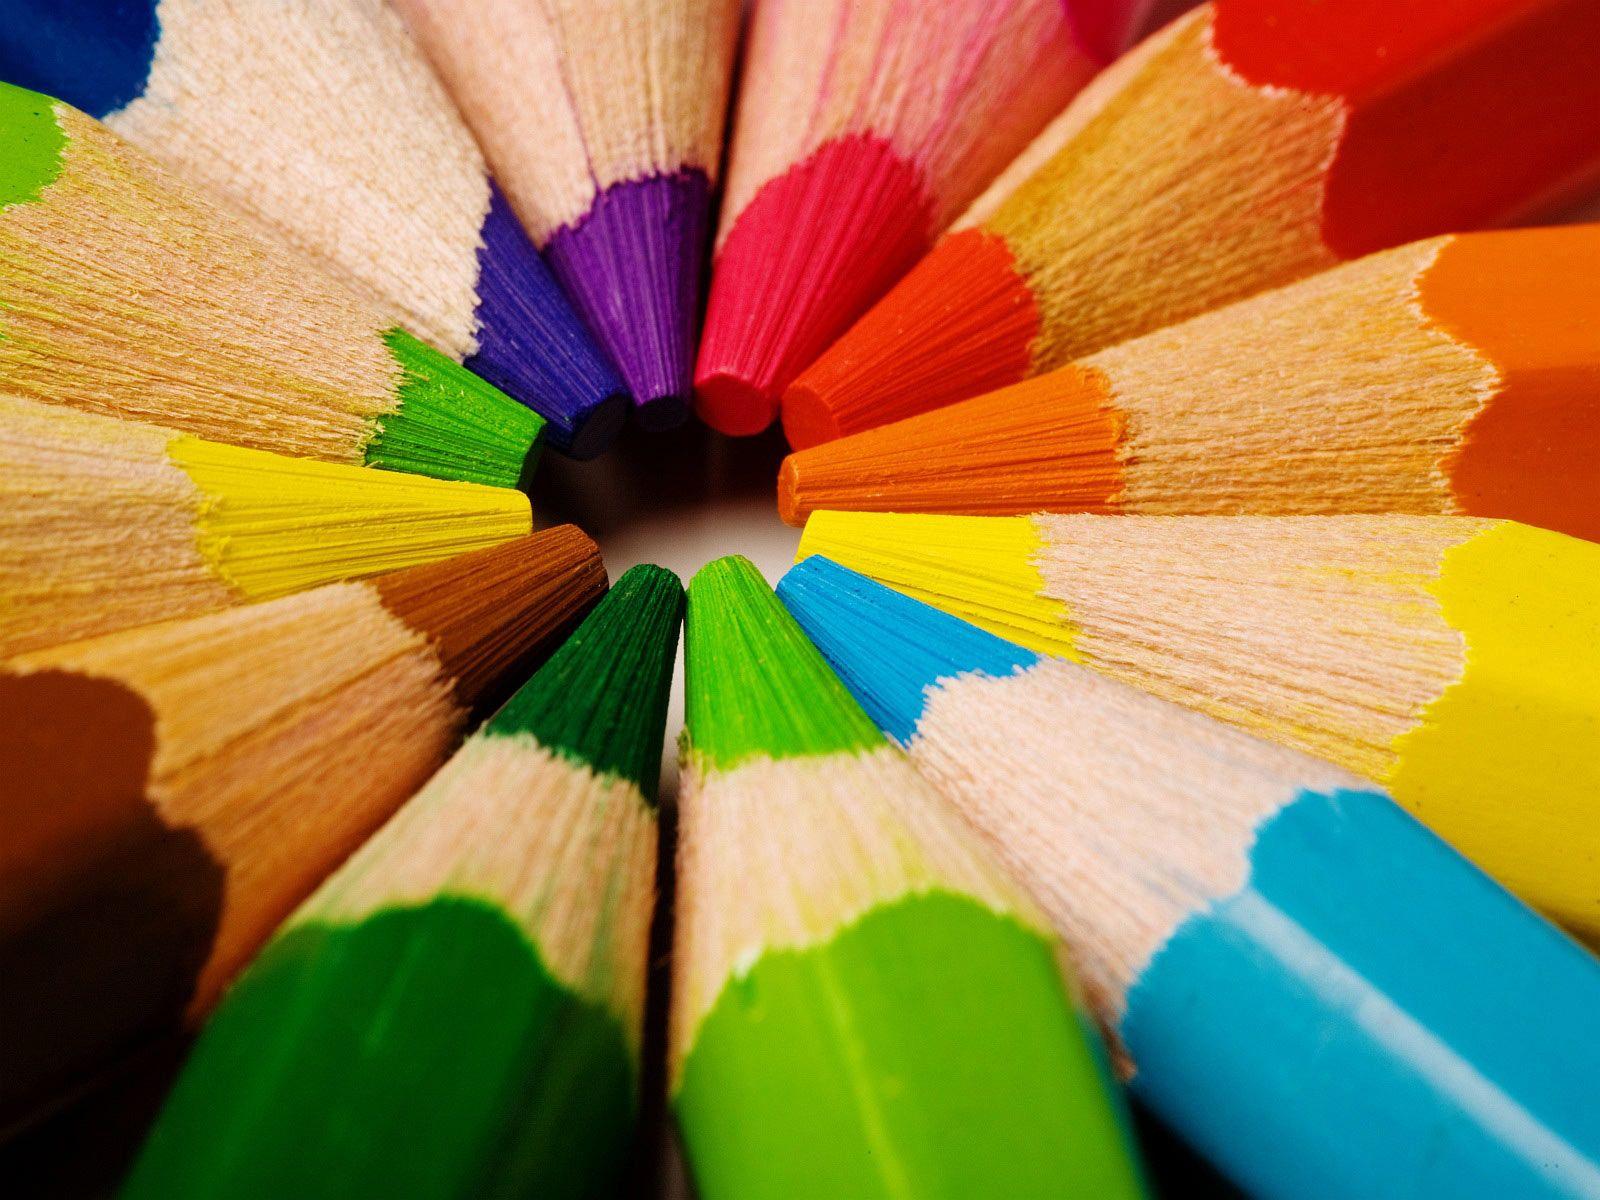 عکس زیبا از مداد رنگی های قشنگ مارک ام کیو با کیفیت بالا 